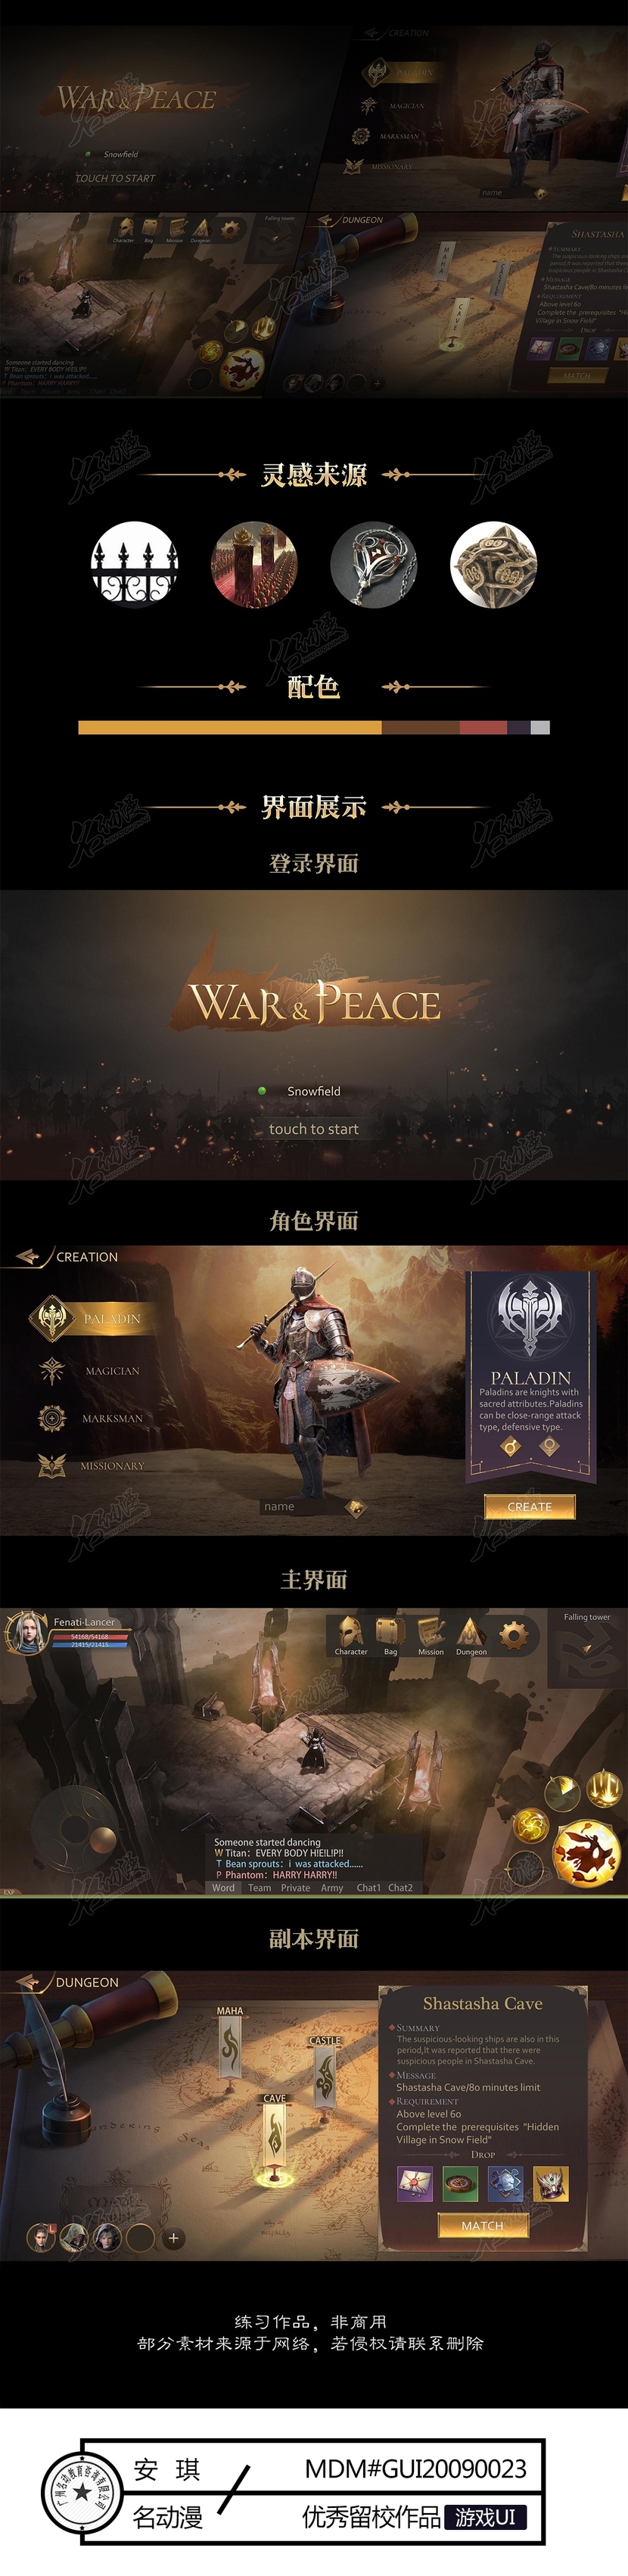 War＆Peace游戏UI设计插画图片壁纸